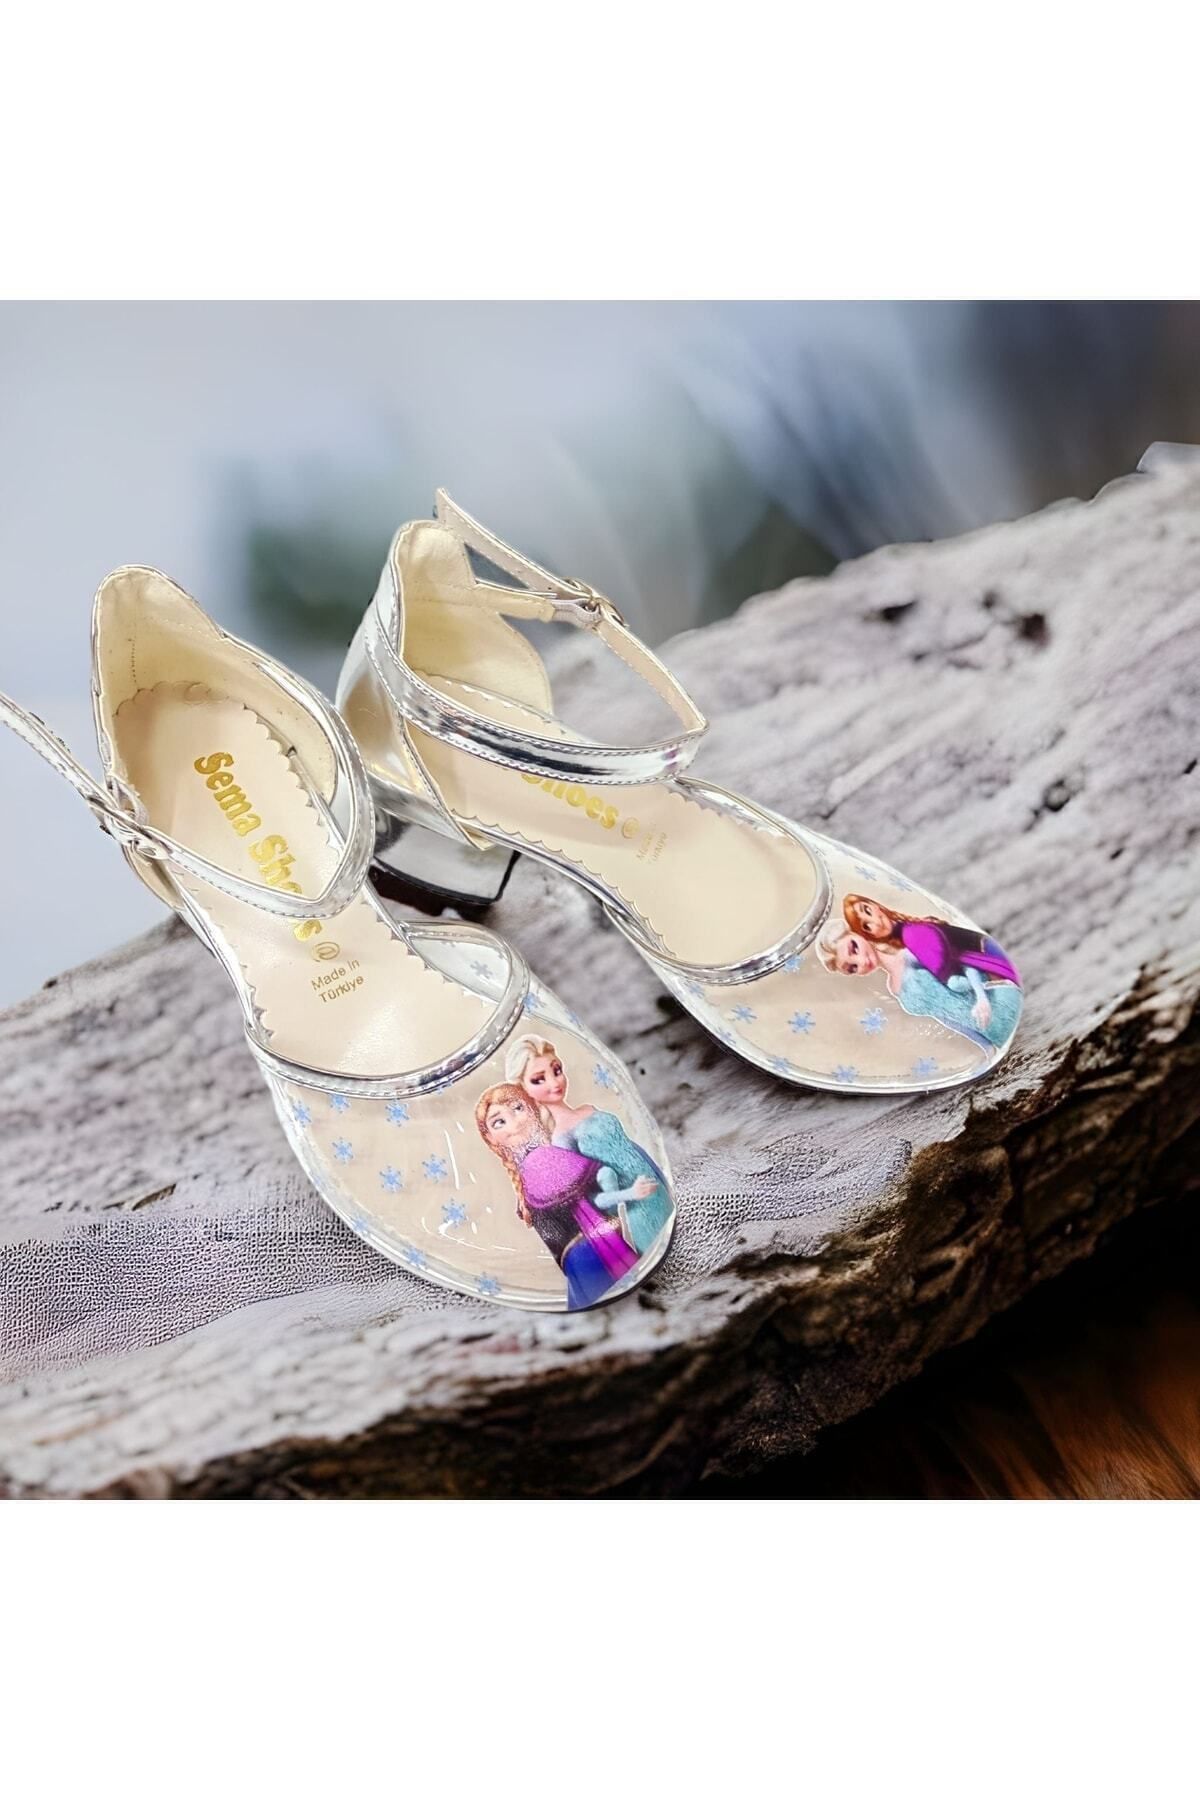 PİNKBLUEKİDSS Elsa Figürlü Topuklu Şeffaf Kız Çocuk Ayakkabısı